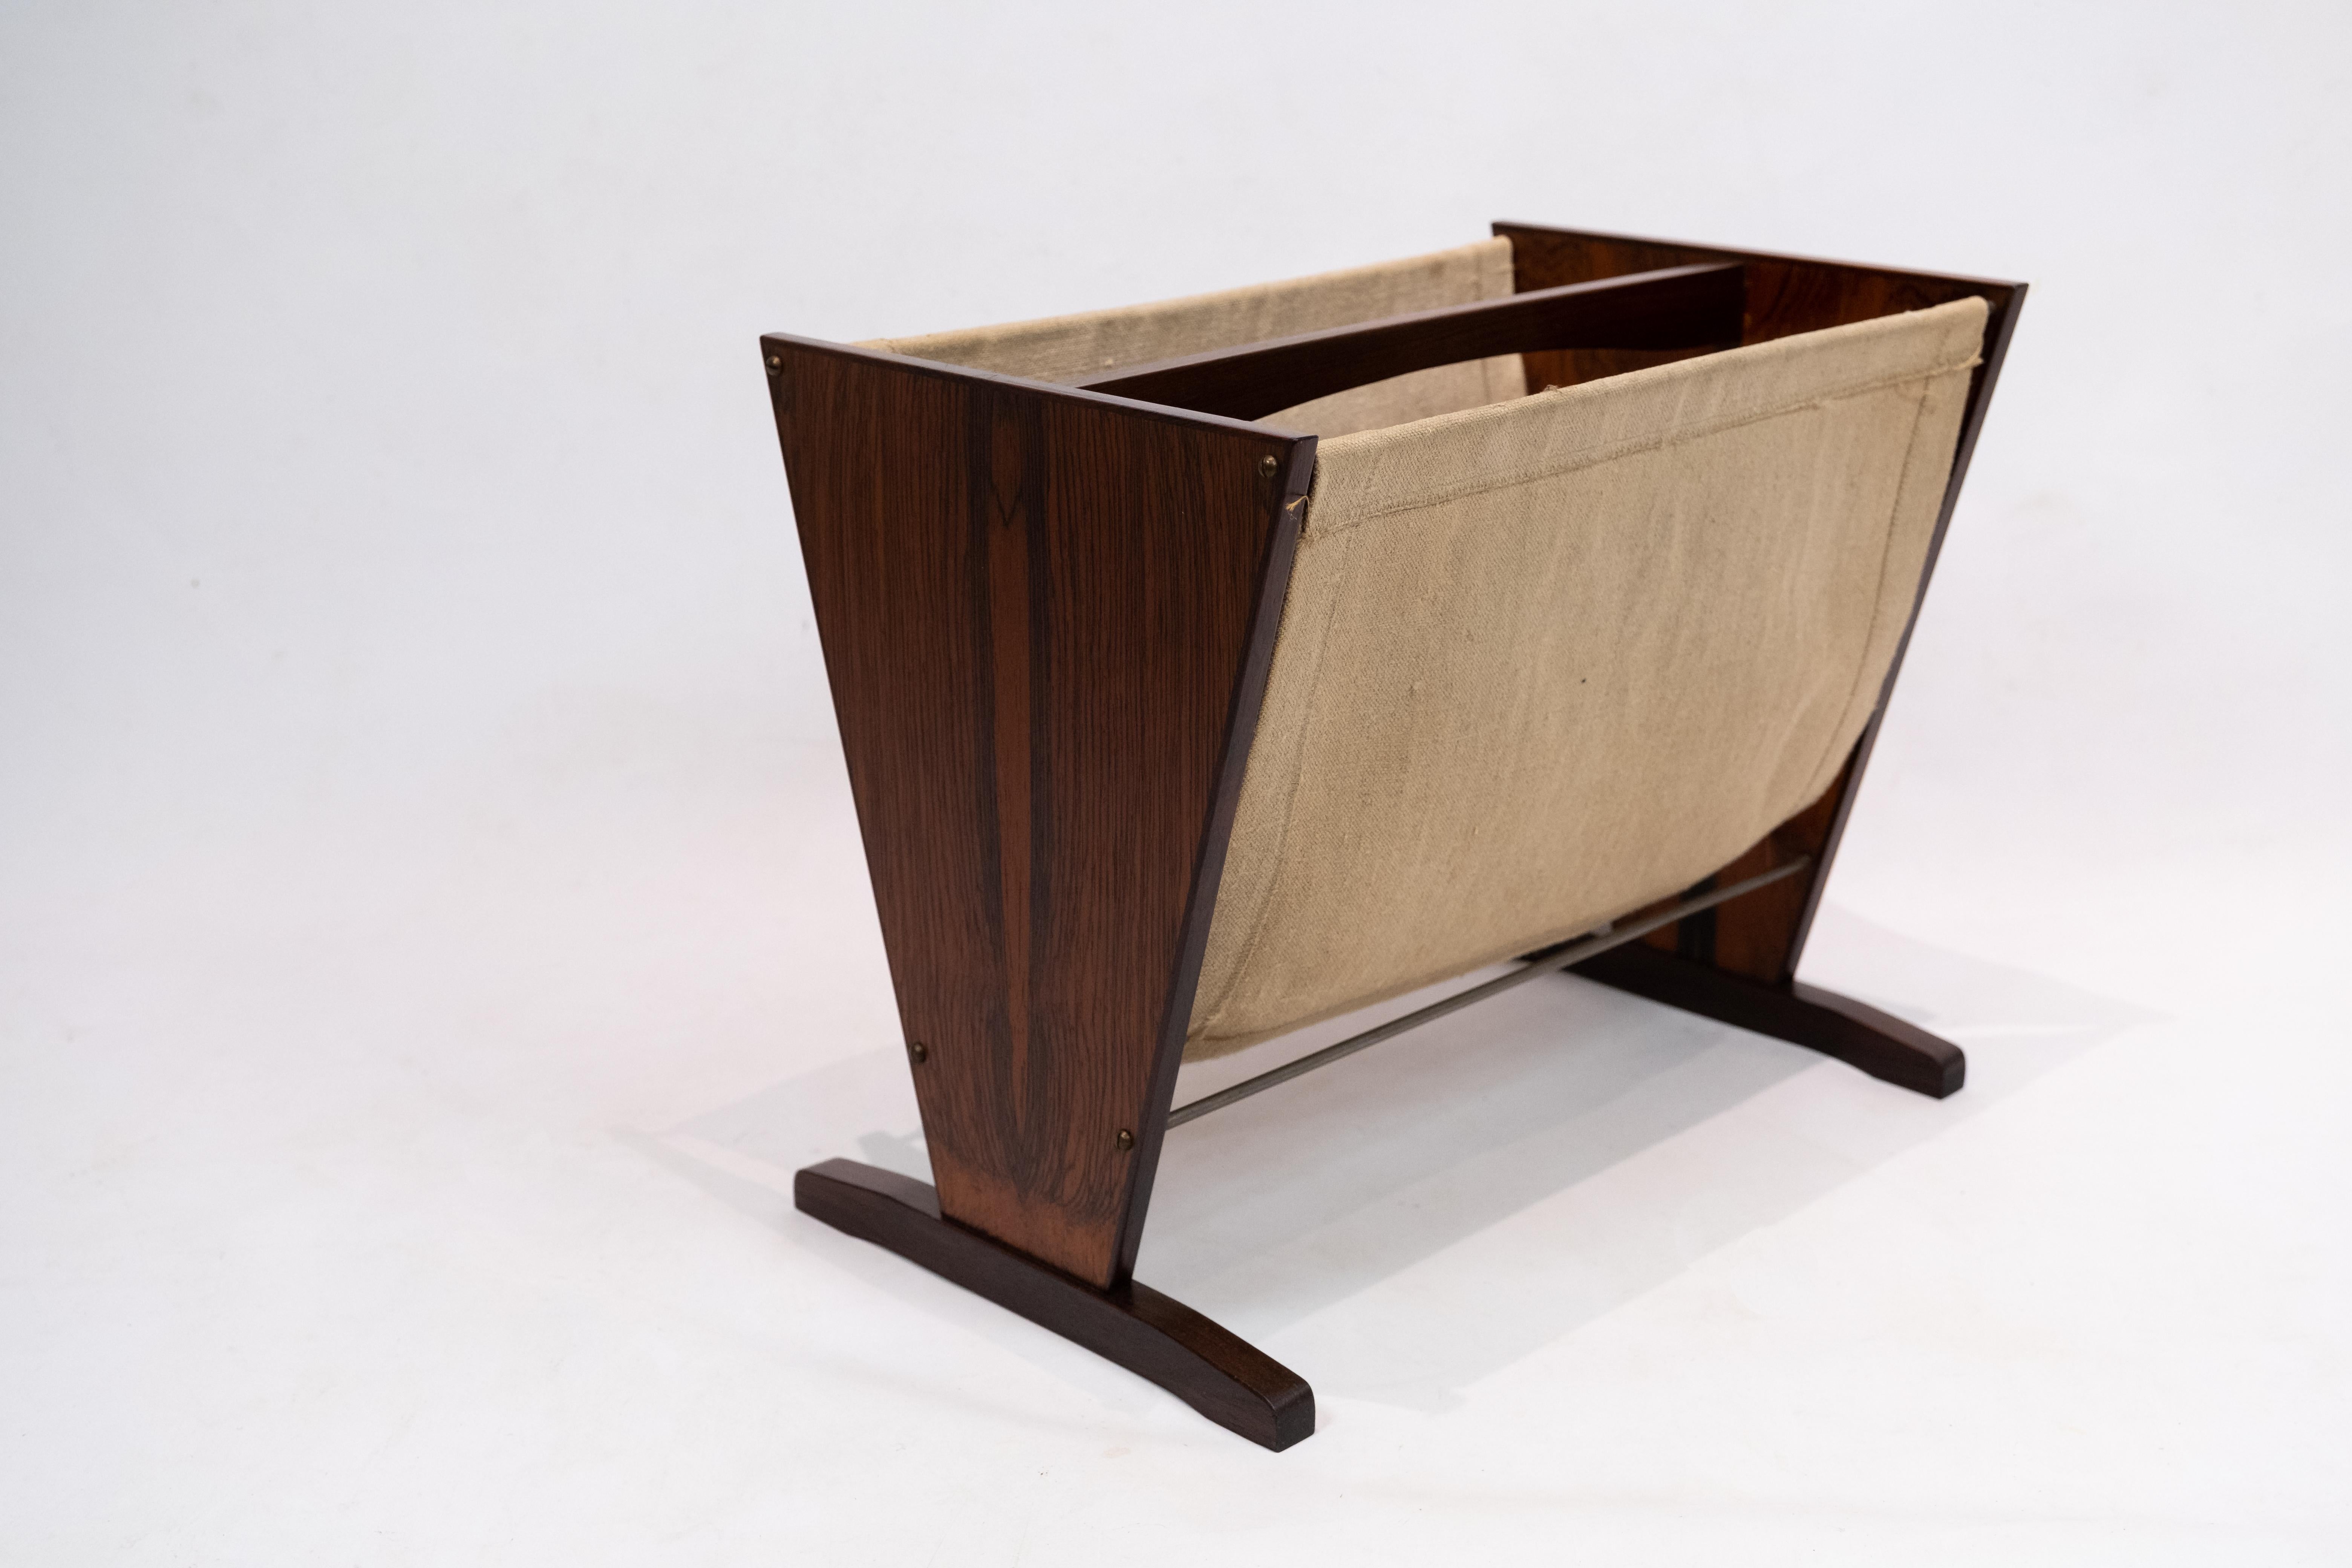 Der dänische Zeitungsständer aus Palisanderholz aus den 1960er Jahren ist ein stilvolles und funktionelles Stück, das die schlichte Eleganz des modernen Designs der Mitte des Jahrhunderts verkörpert. Dieses Regal aus edlem Palisanderholz strahlt